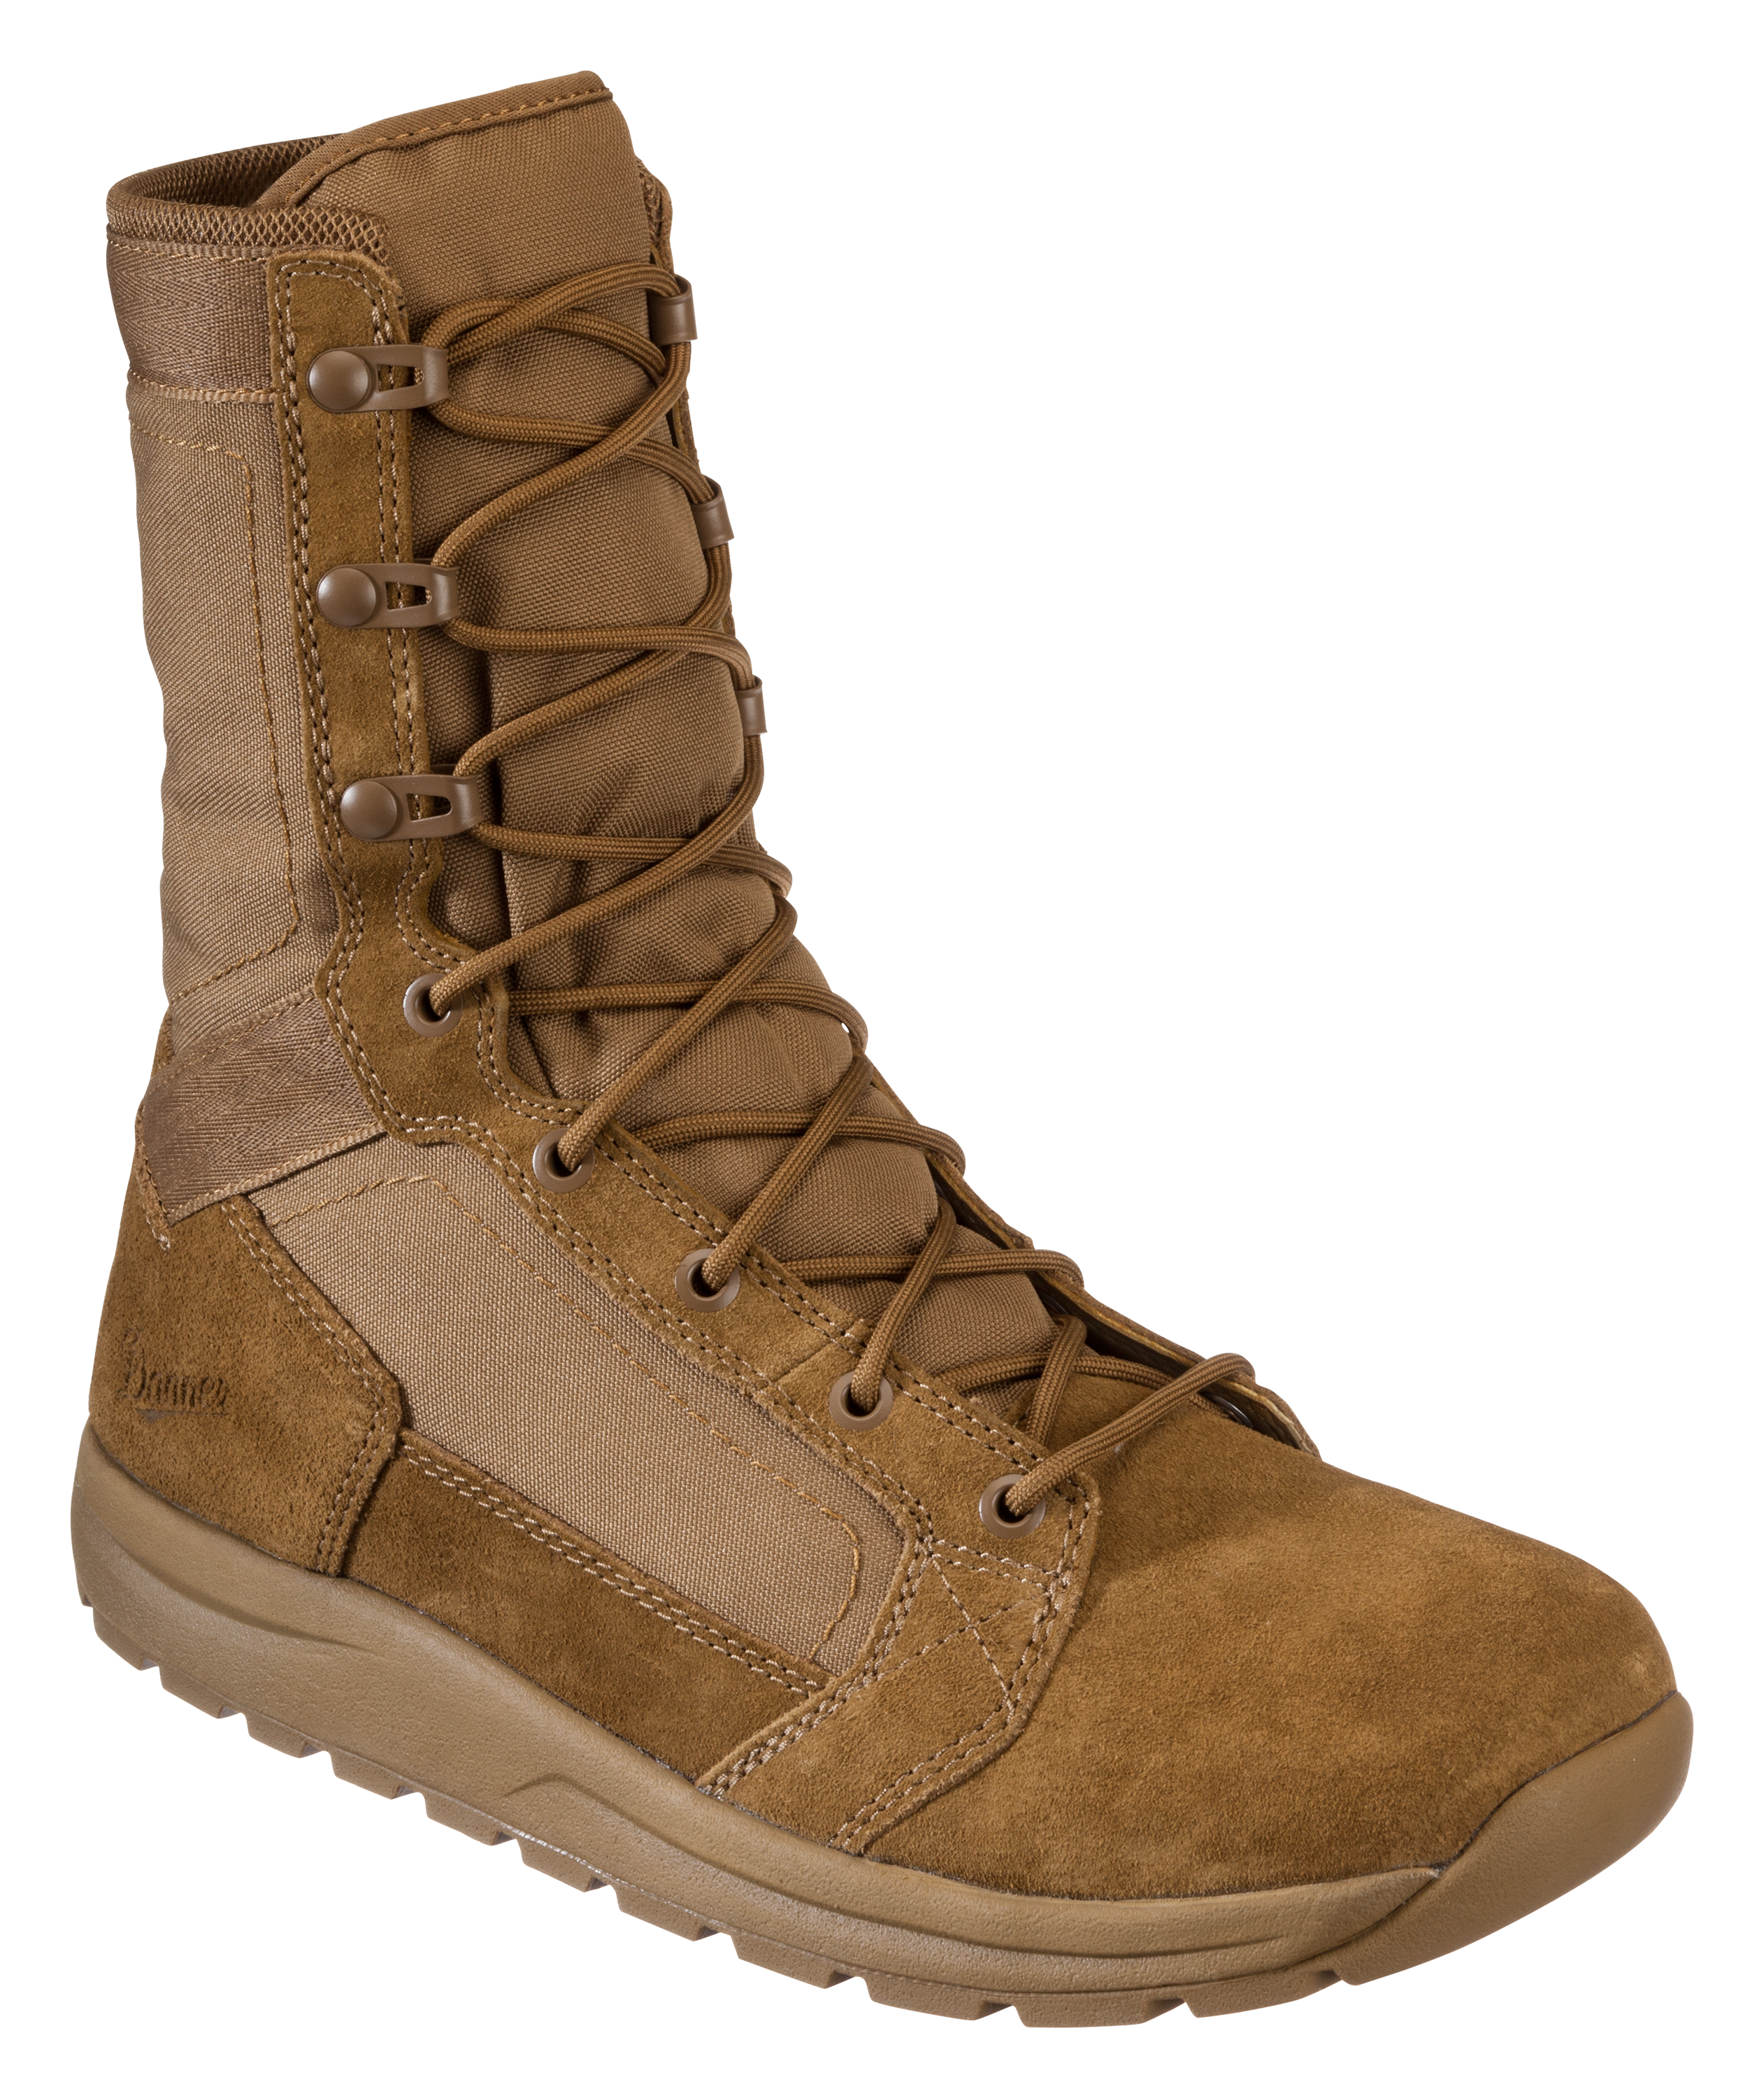 Danner Tachyon Tactical Boots for Men - Coyote - 10M